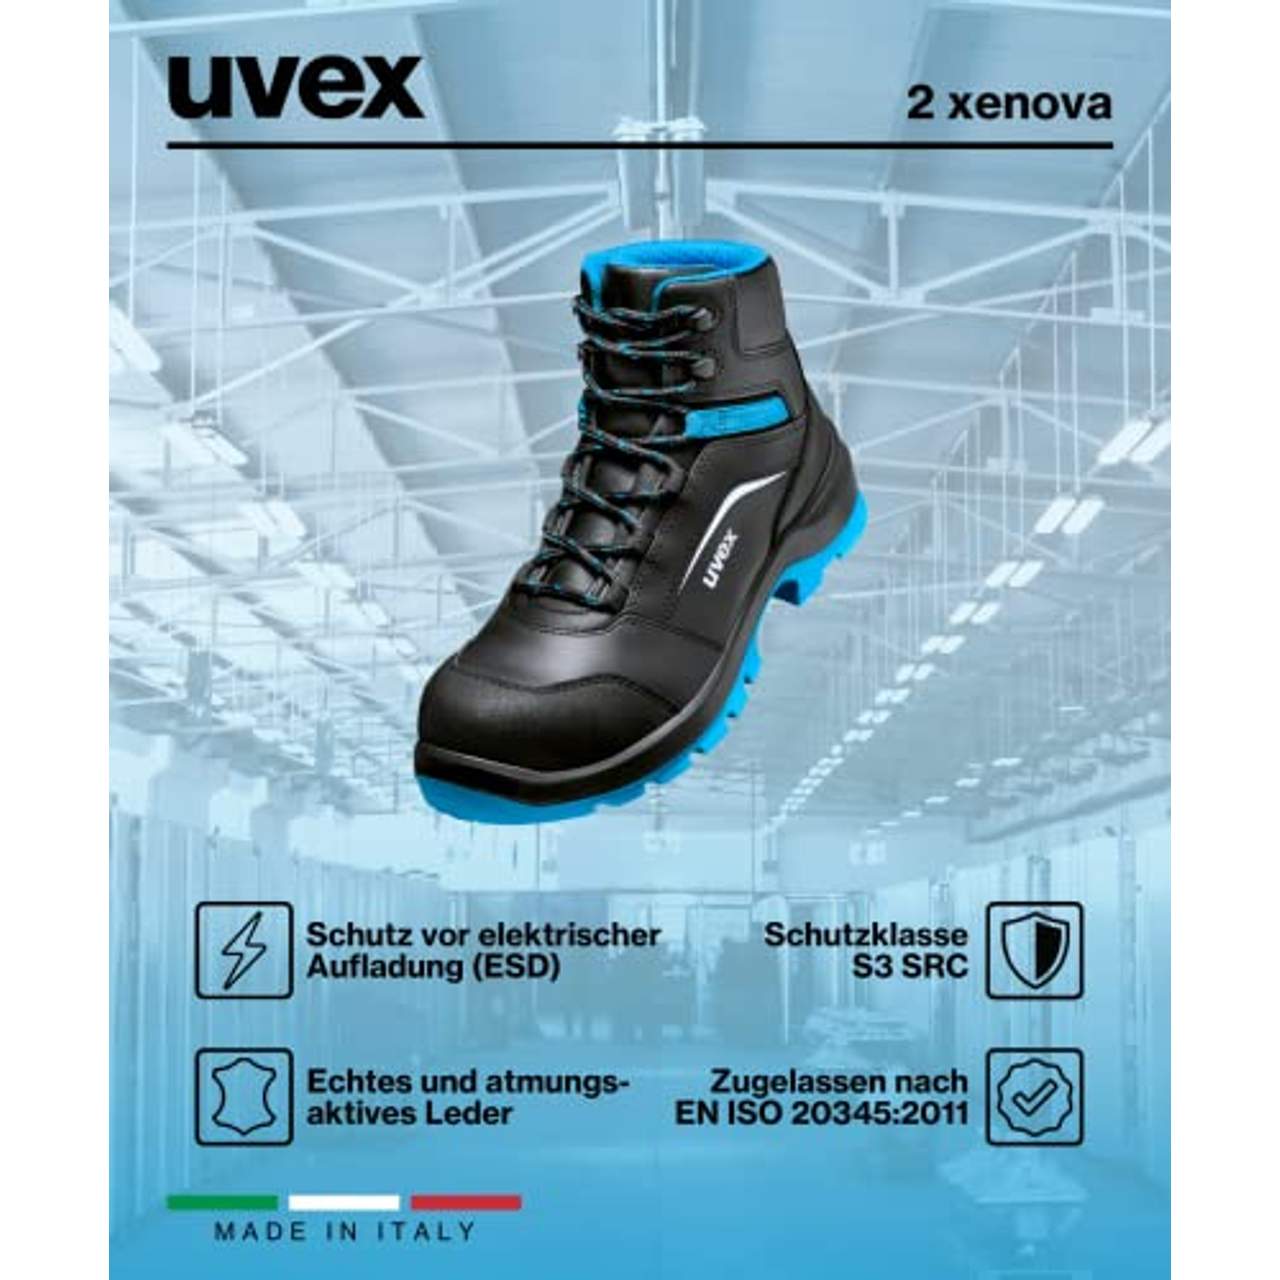 Uvex 2 Xenova Arbeitsstiefel Sicherheitsstiefel S3 SRC ESD